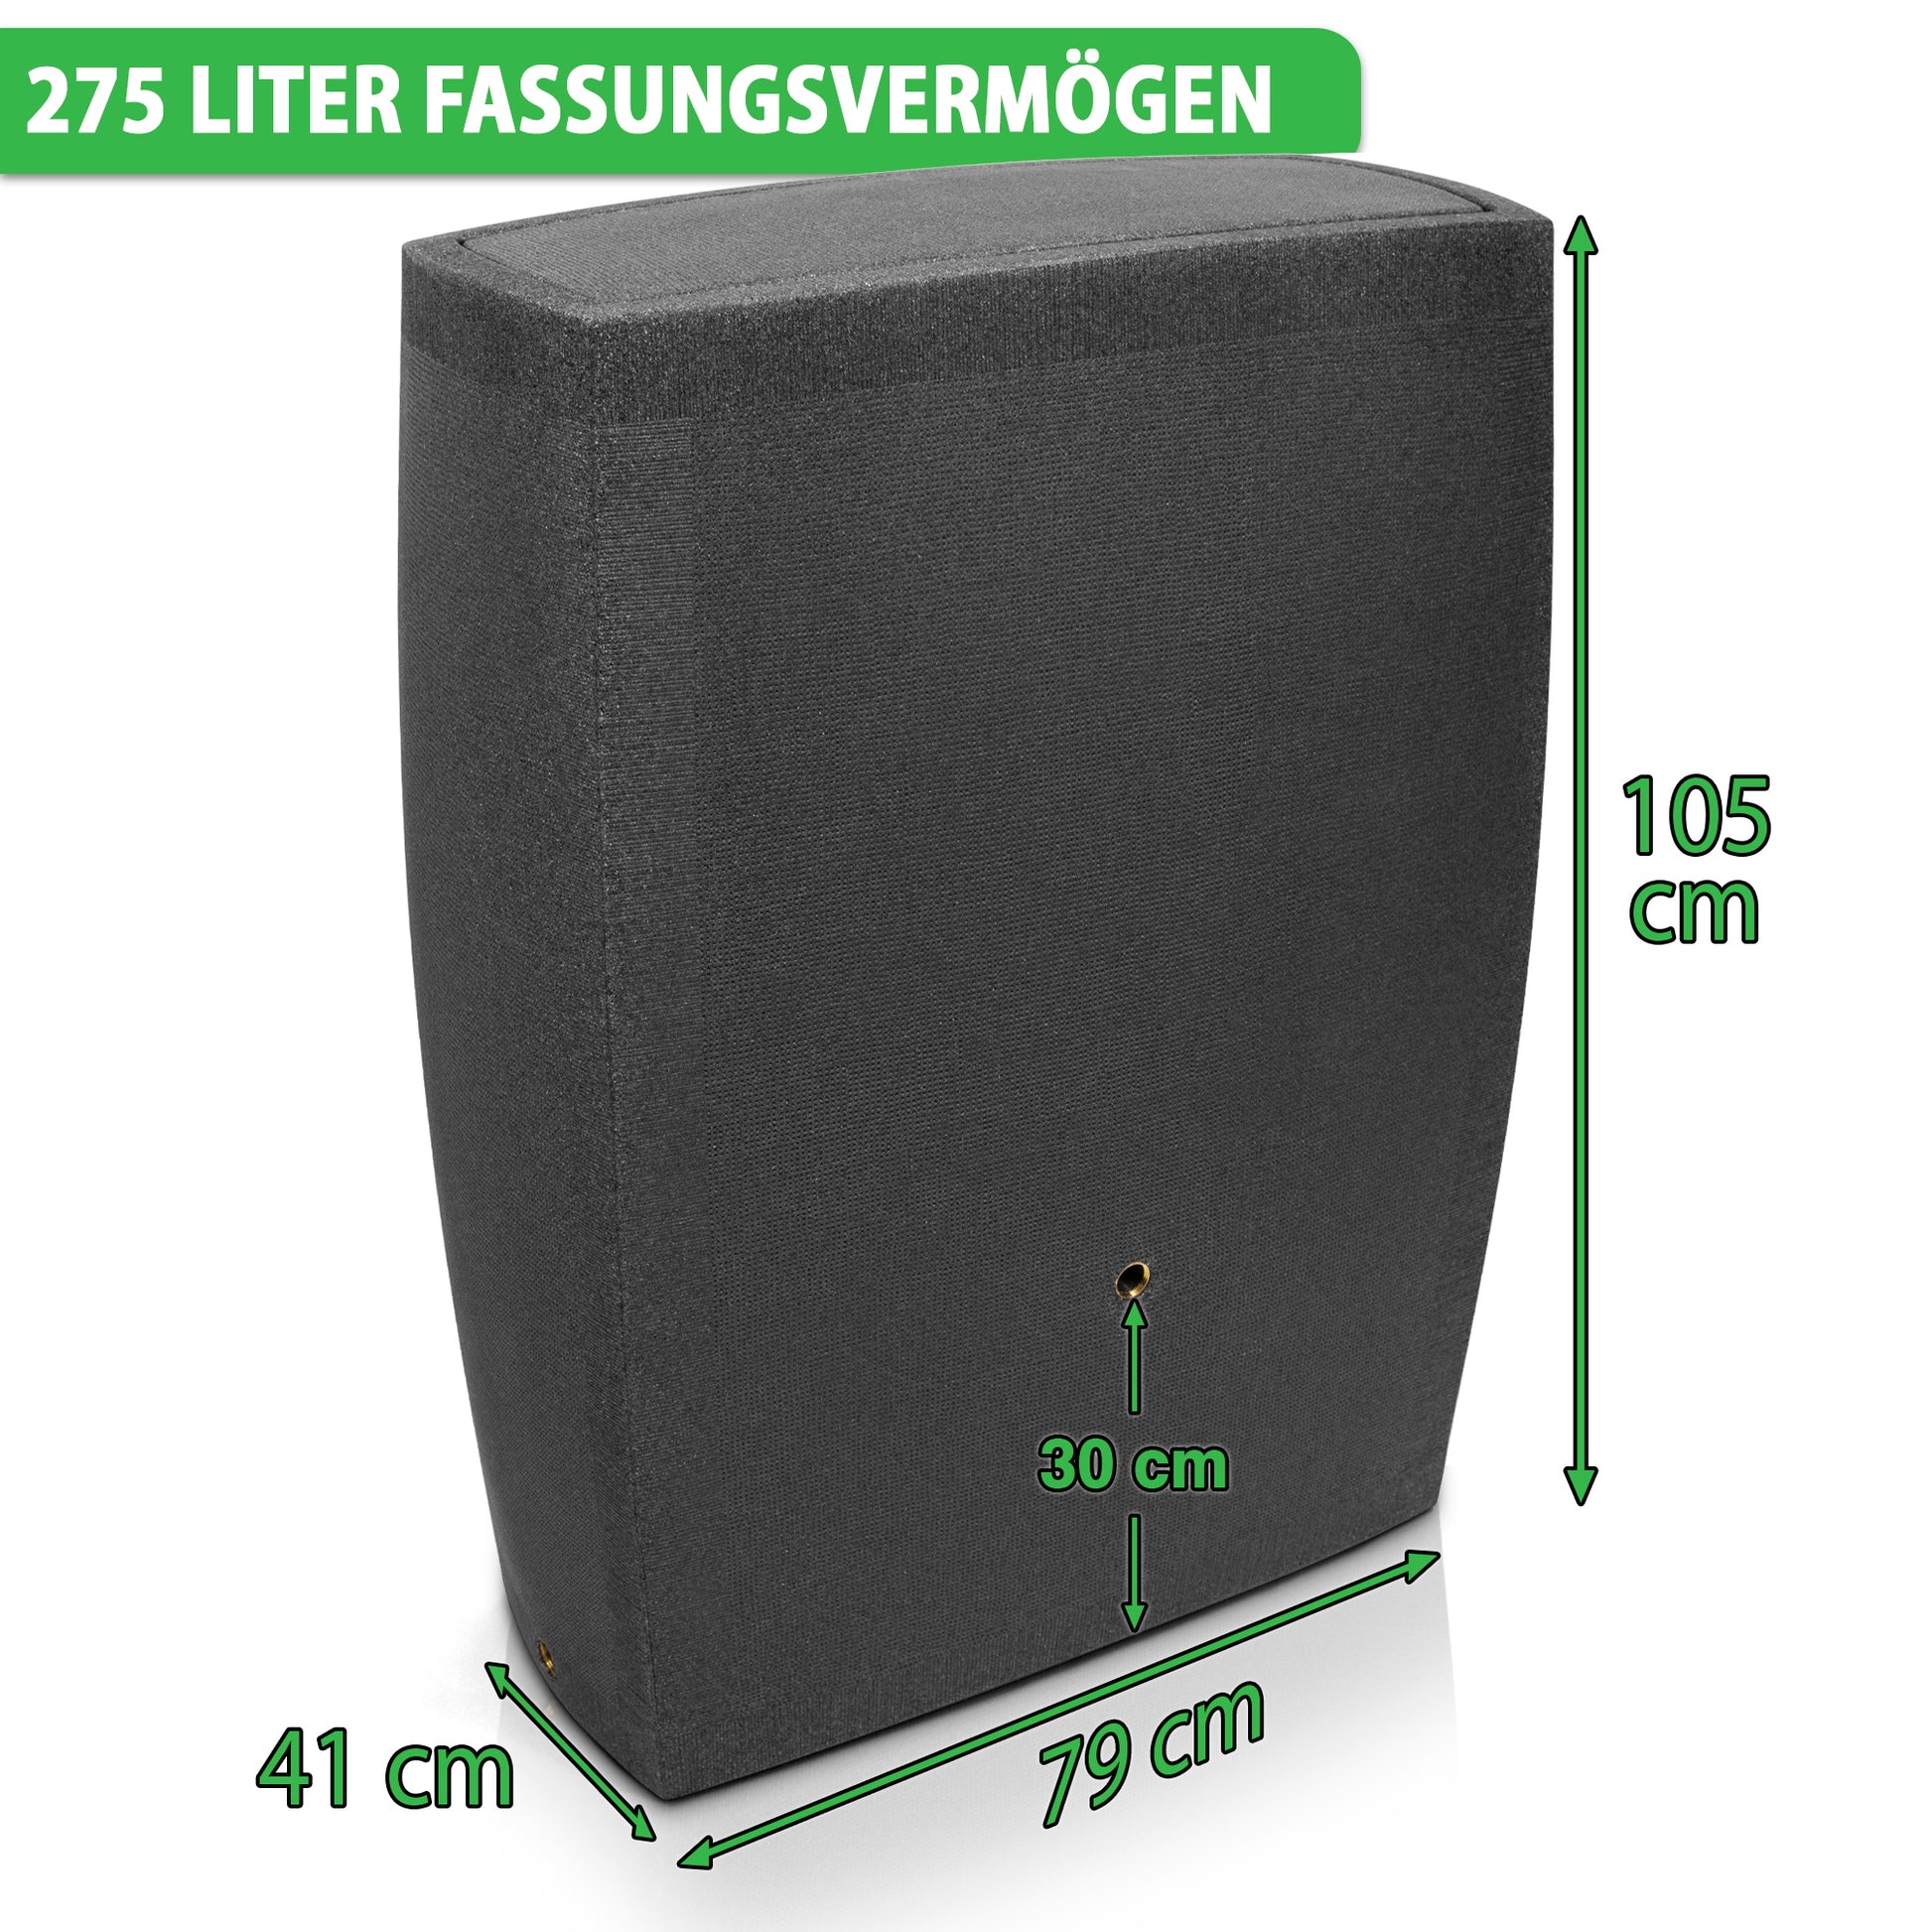 Großer schwarzer Lautsprecher mit den Maßen: 105 cm Höhe, 79 cm Breite, 41 cm Tiefe und einem Volumen von 275 Litern YourCasa Regentonne
[yourcasa-de].